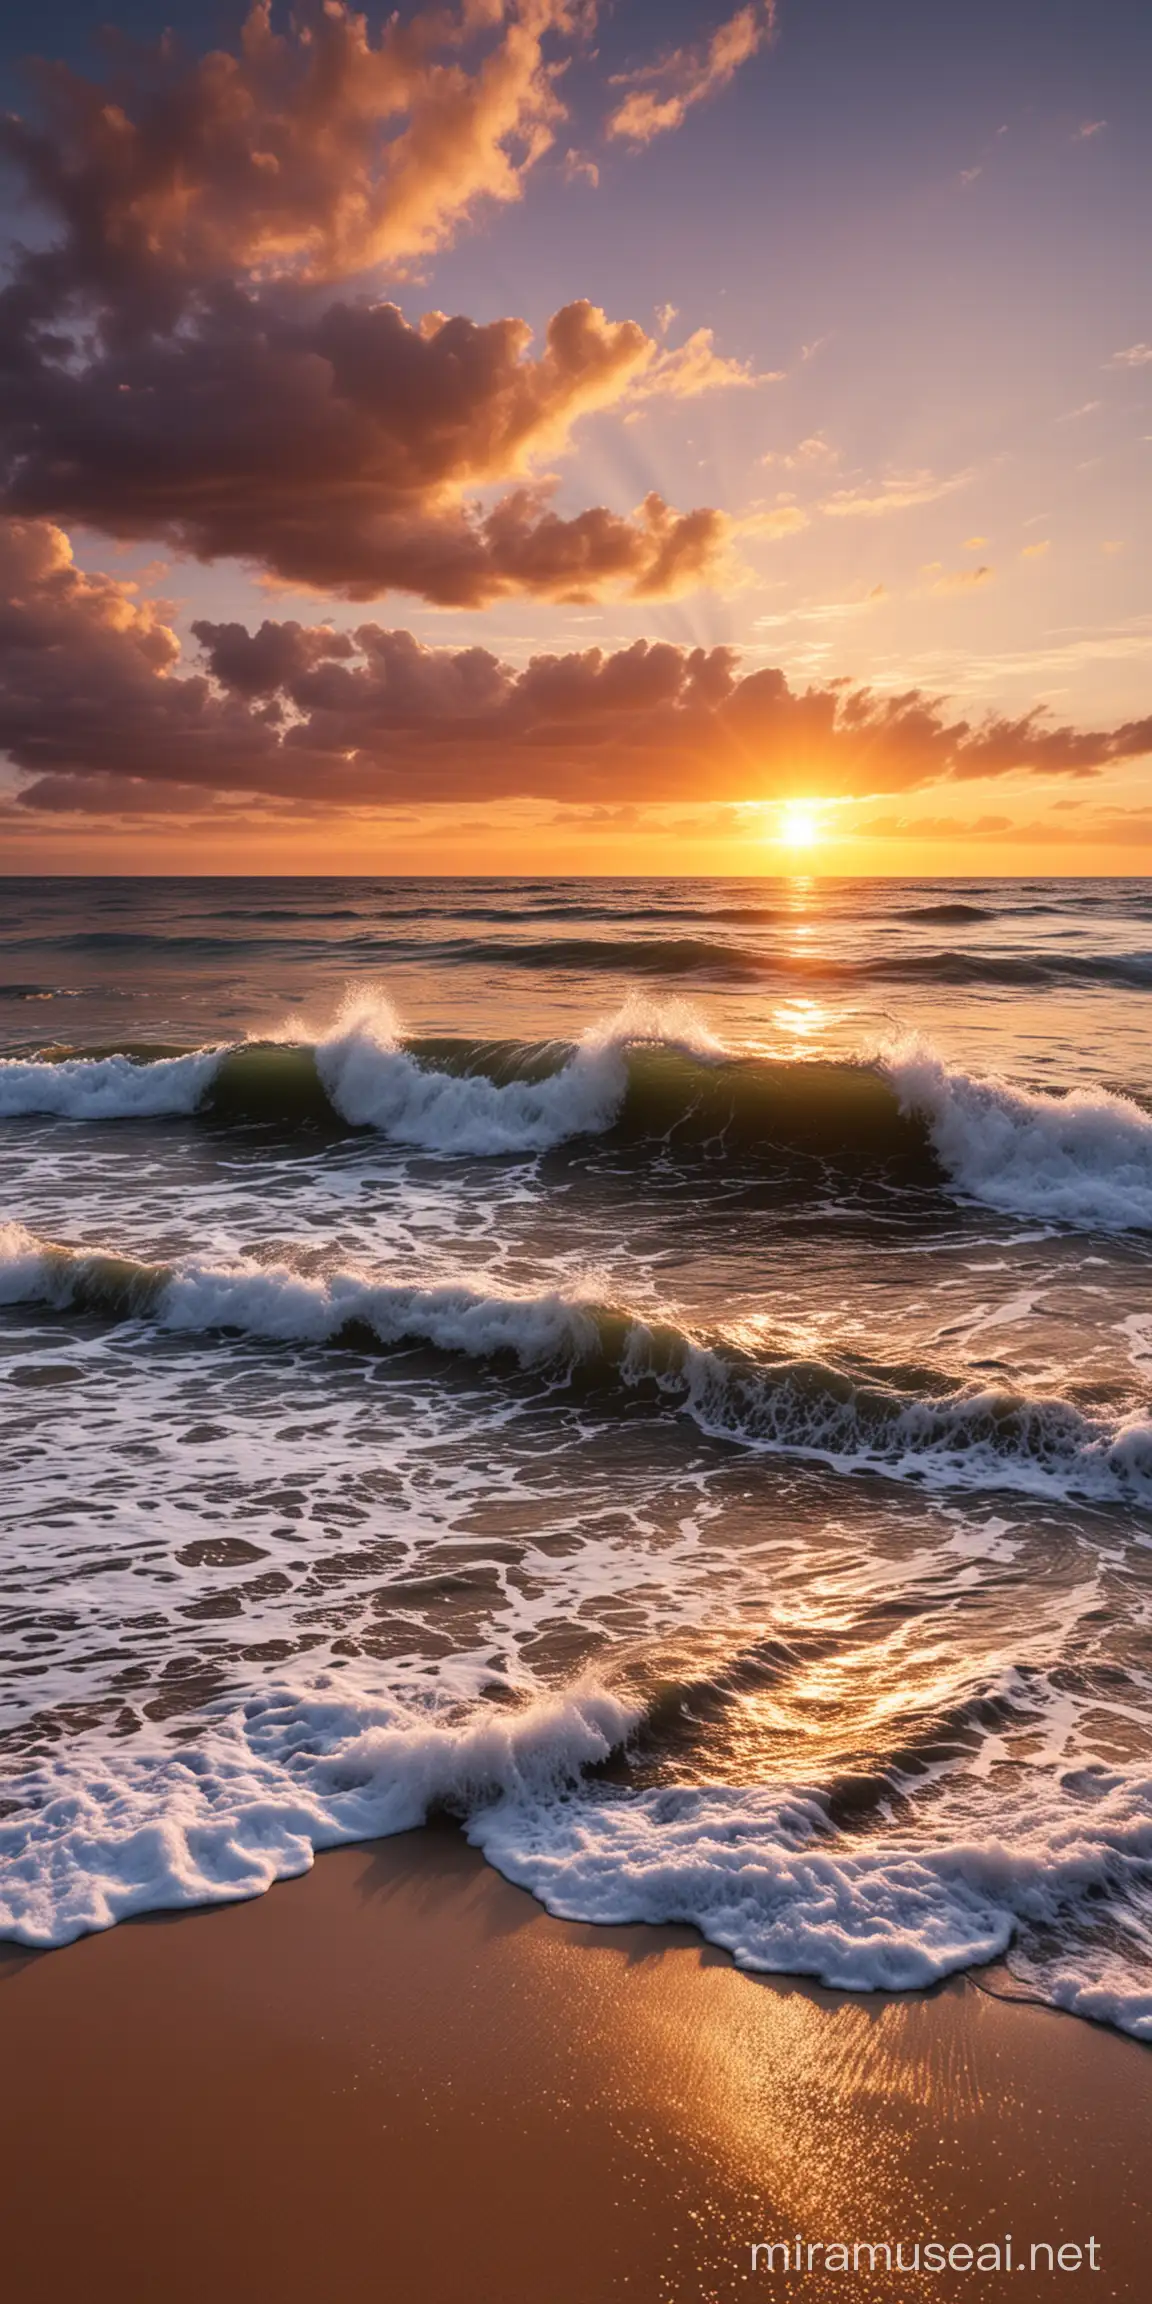 一张构思完美的风景图，傍晚海浪冲到沙滩上，夕阳西下，天上的晚霞好漂亮。